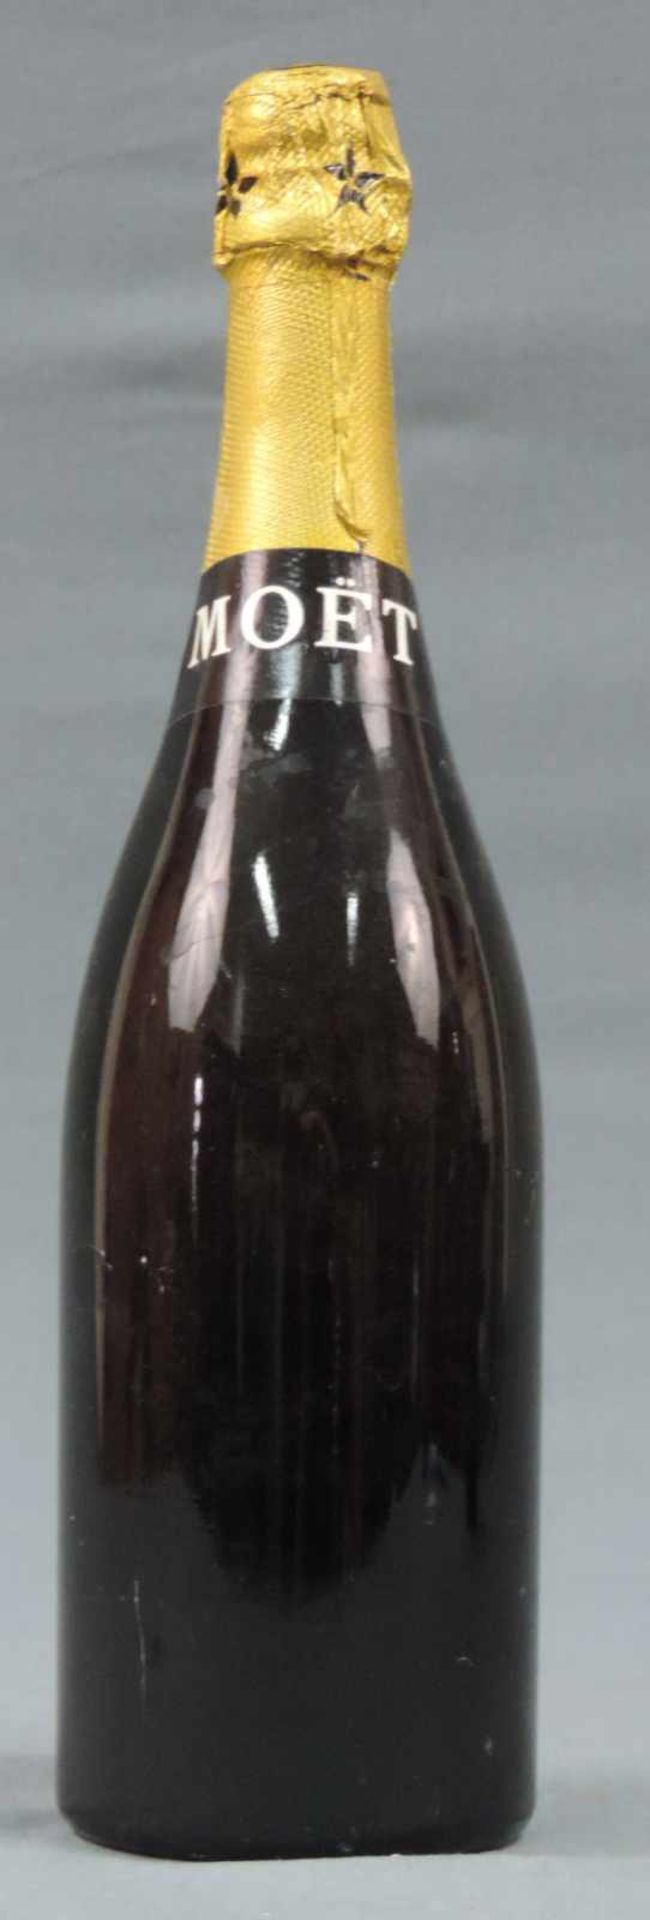 1964 Moet & Chandon Champagne Brut Imperial. Eine ganze Flasche Campangner Frankreich weiß. - Image 5 of 6